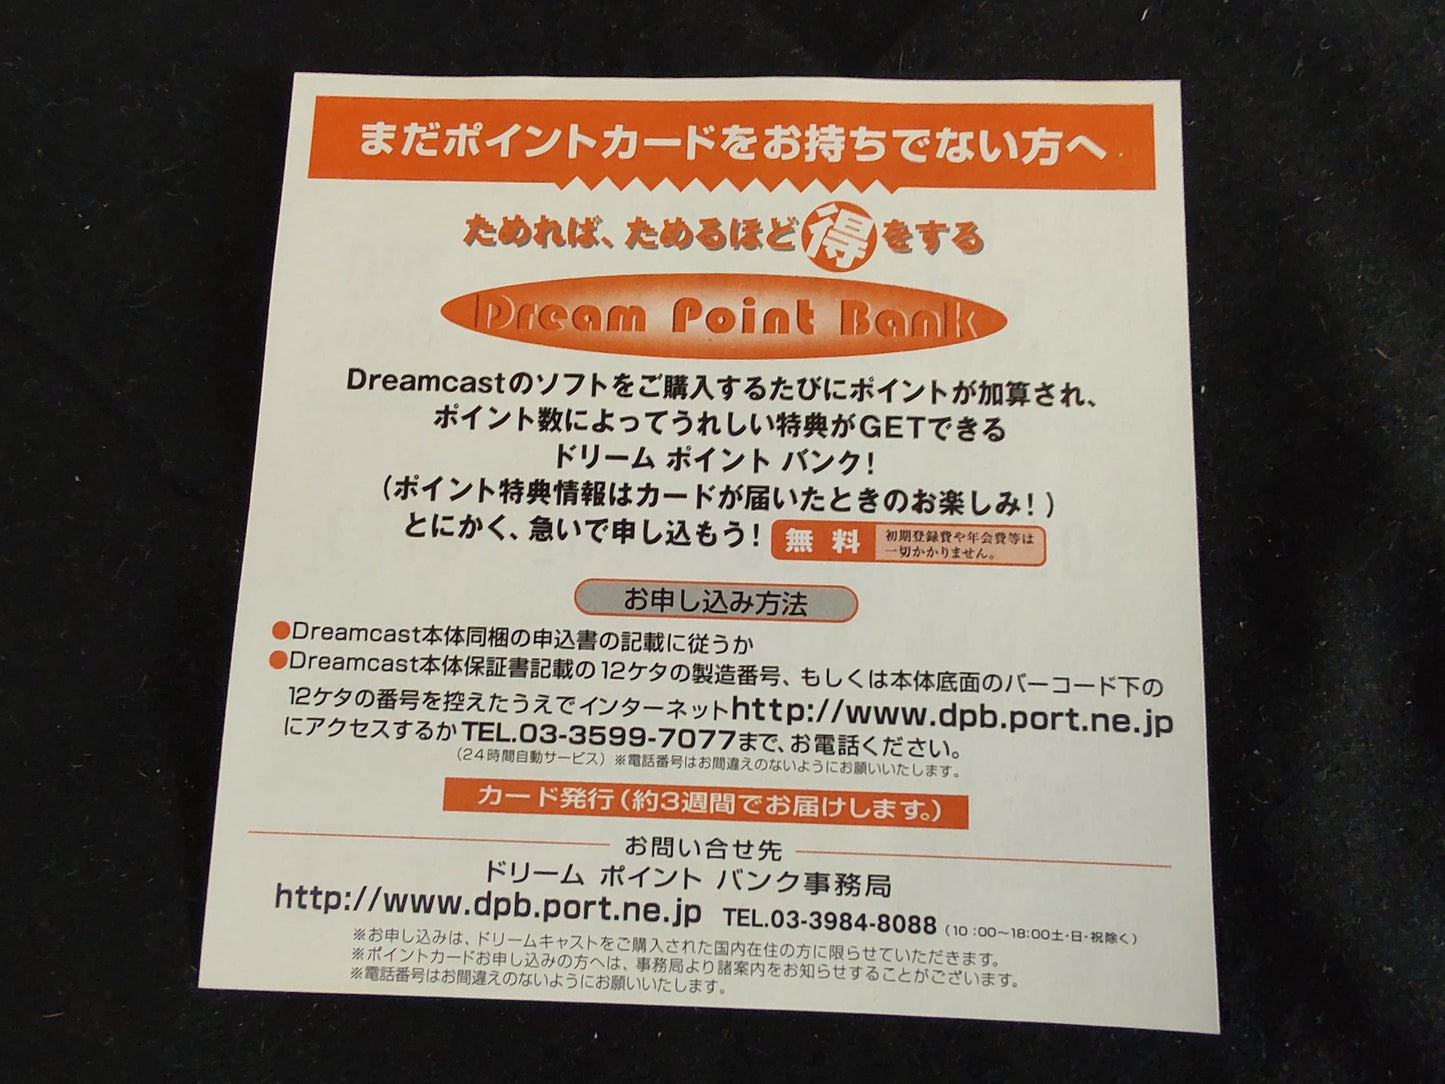 Capcom vs SNK Millennium Fight 2000 SEGA DreamCast, Manual,Boxed set-f0929-